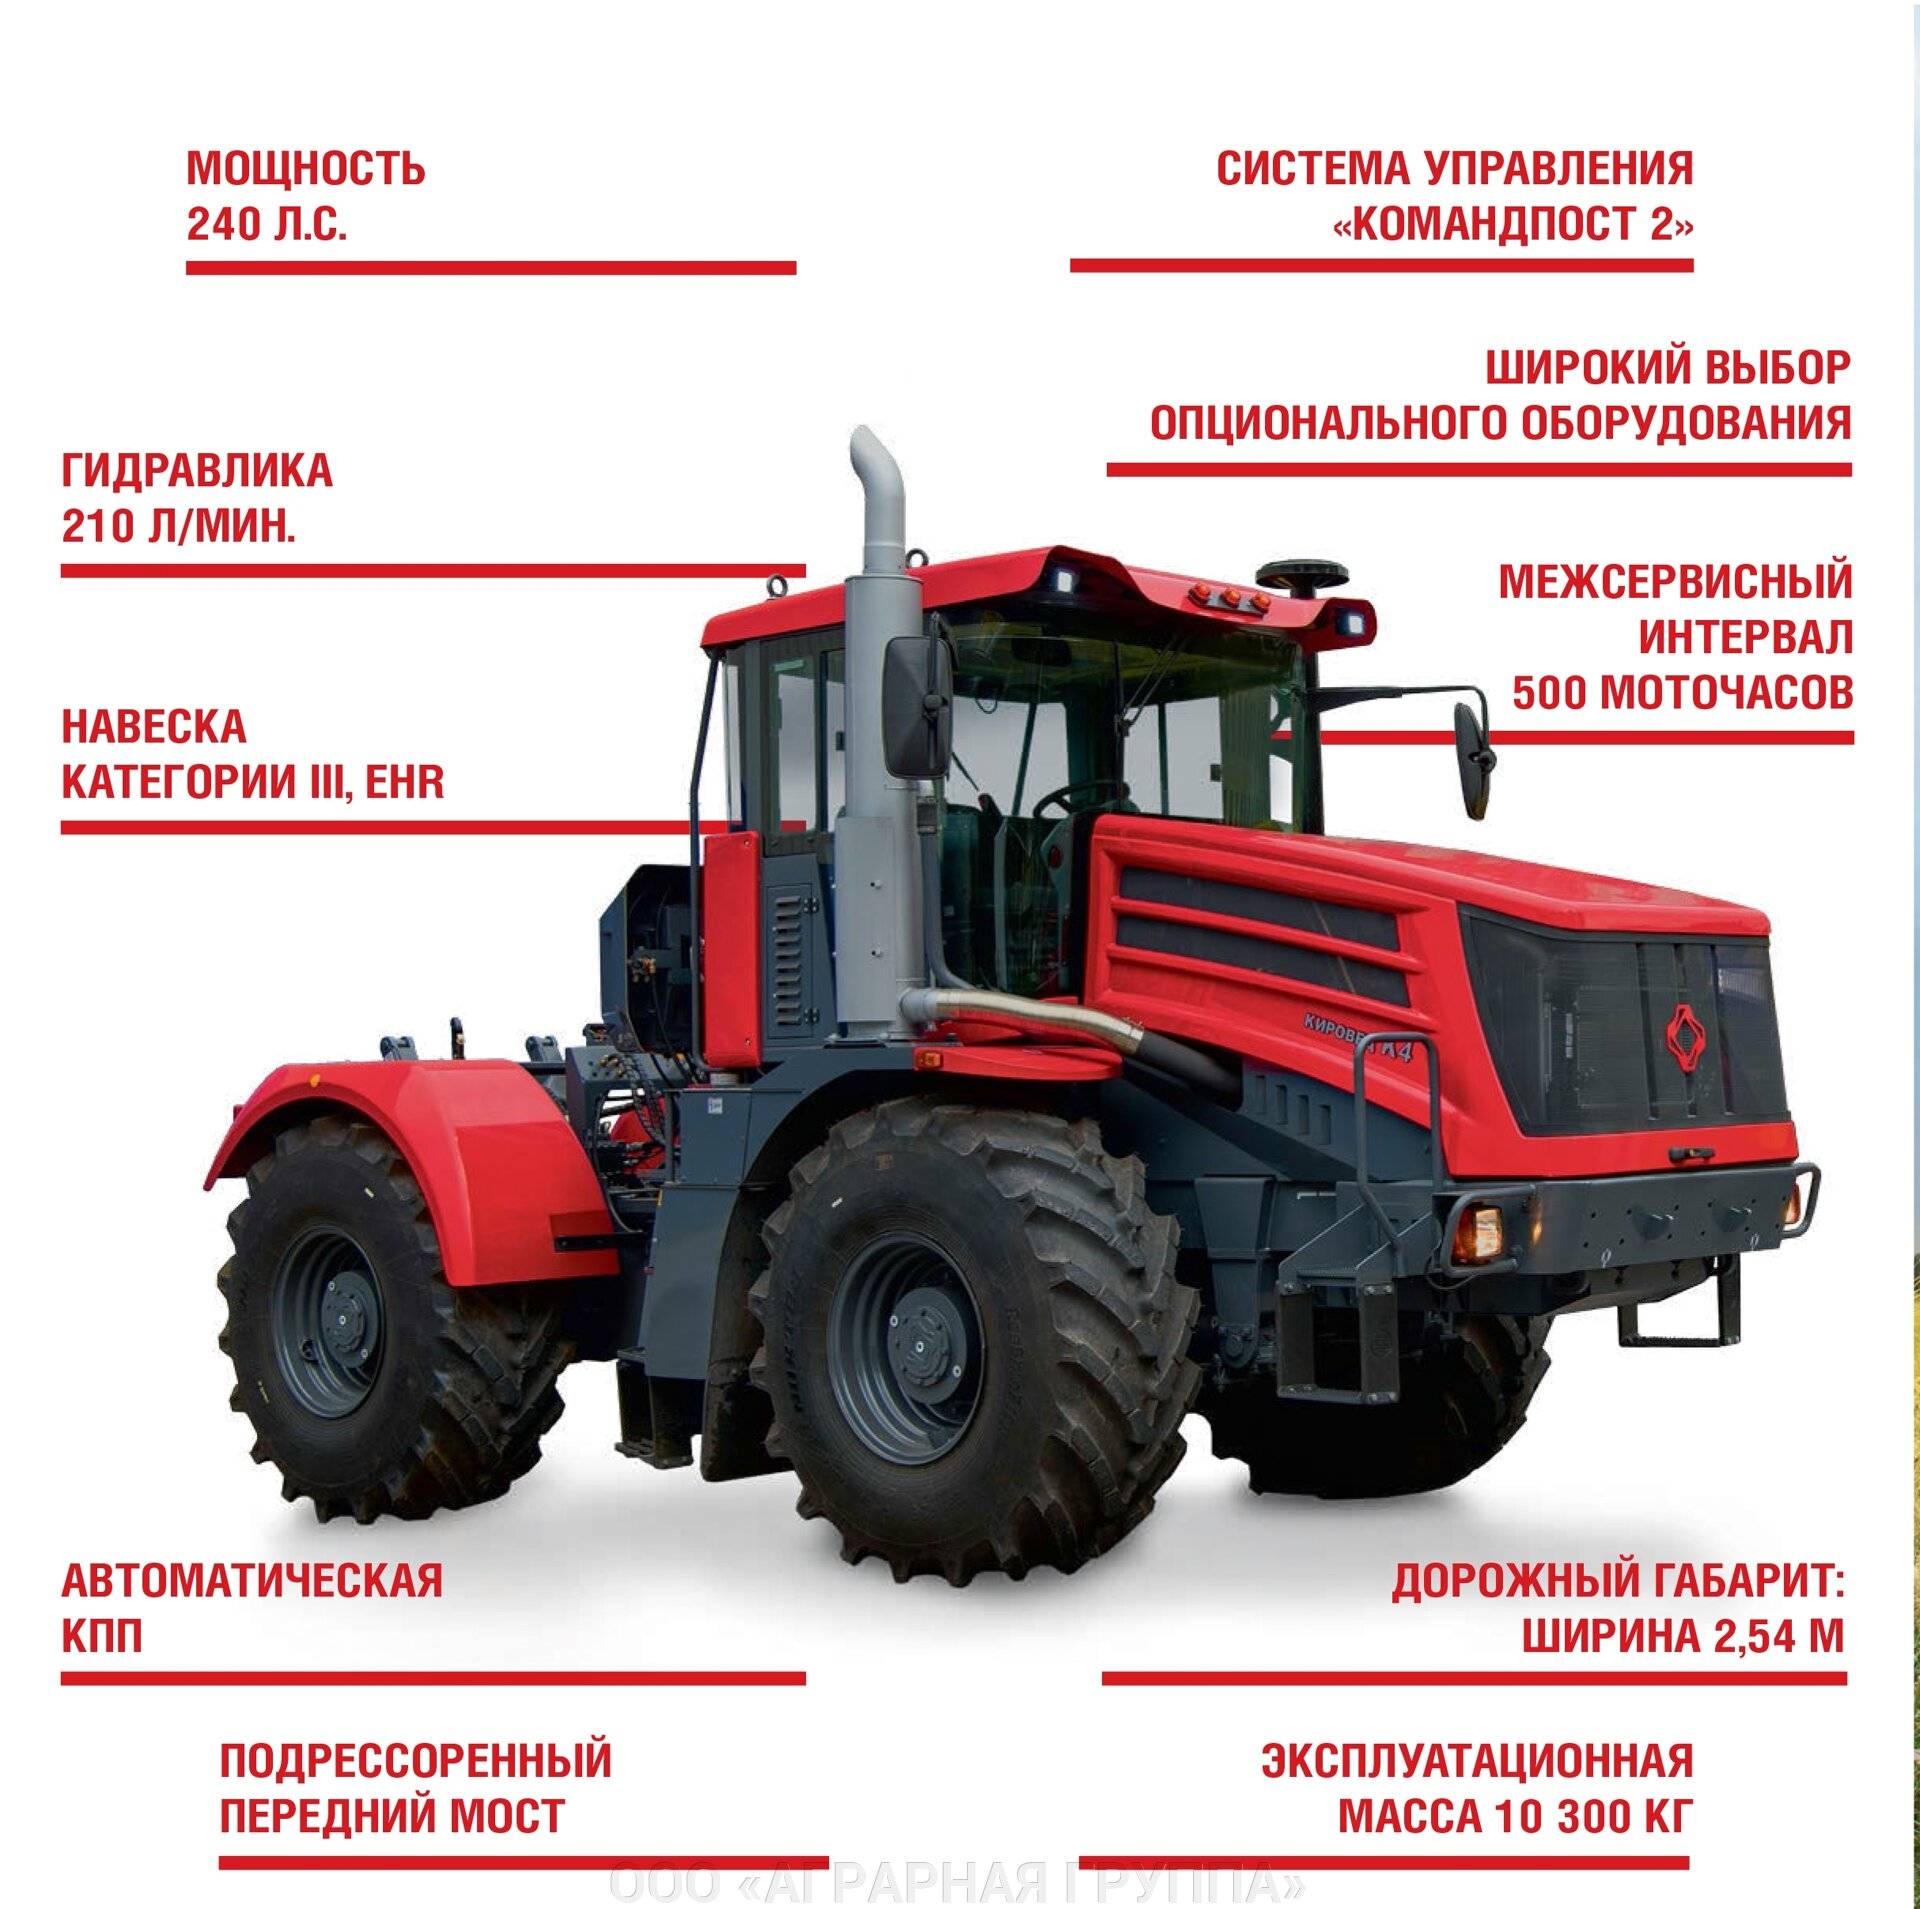 Трактора к-20 — особенности эксплуатации, возможности, устройство